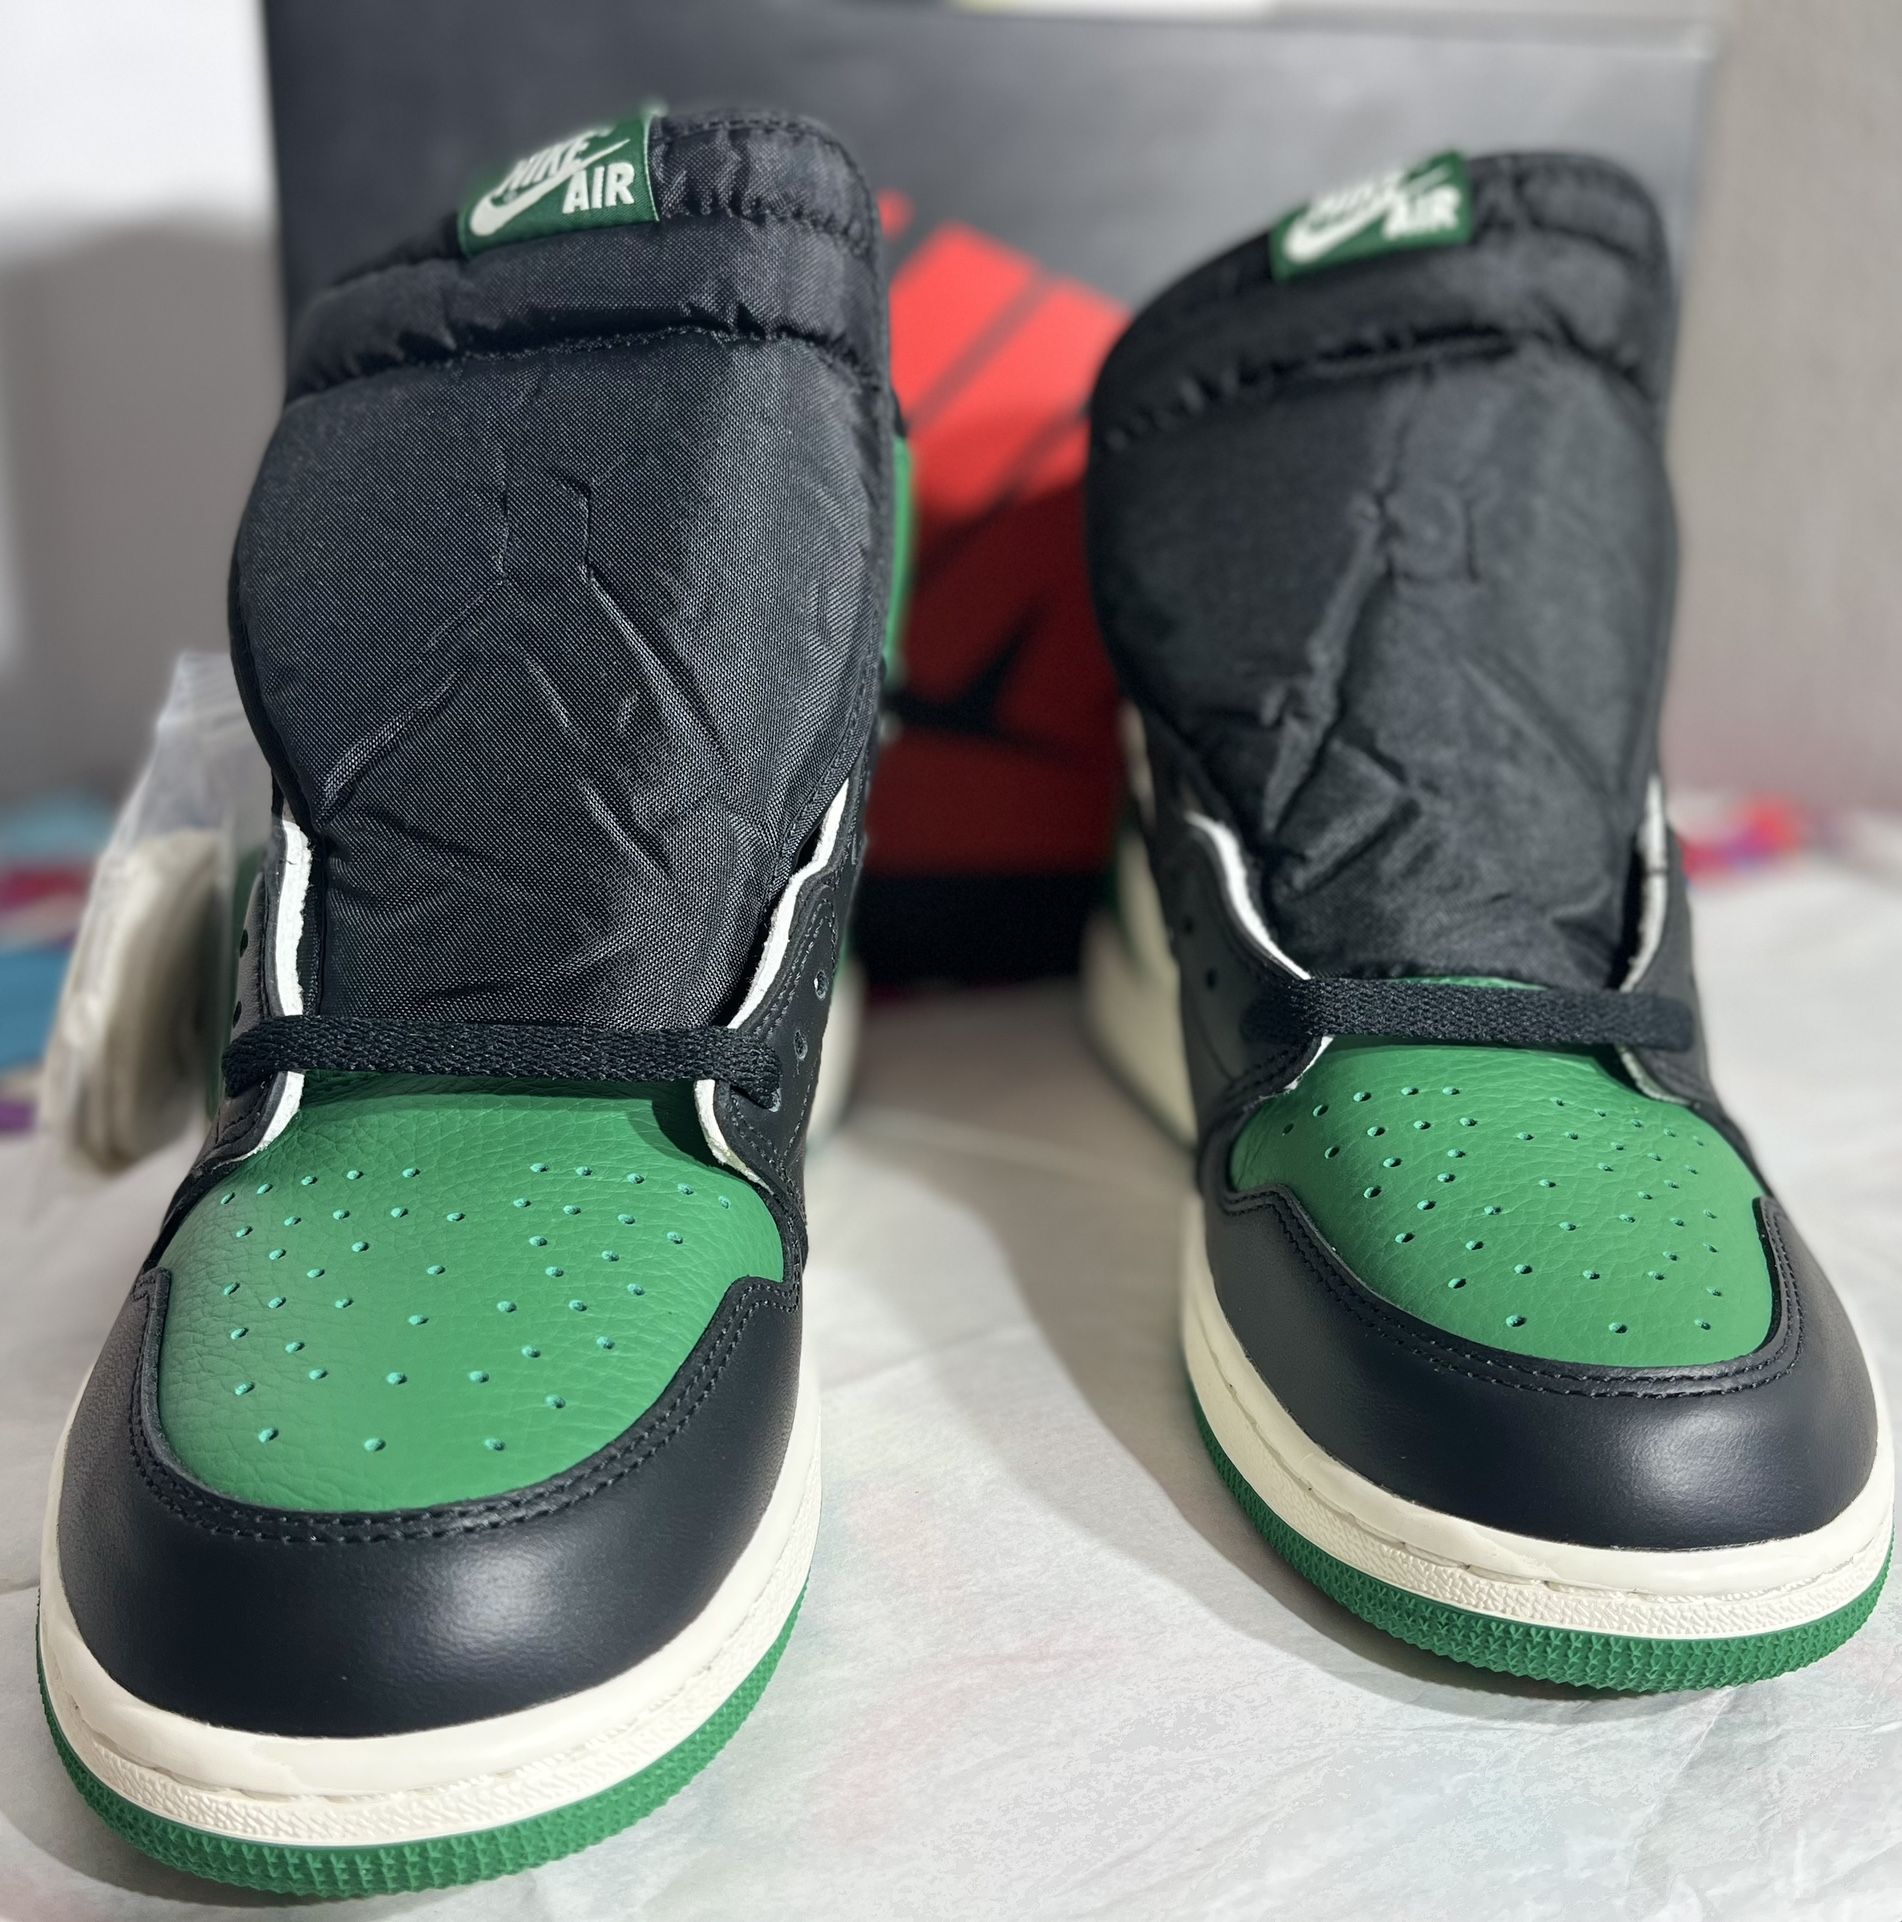 Jordan 1 Retro High OG Verde Pino 2018 (000005)02 Size 12 M